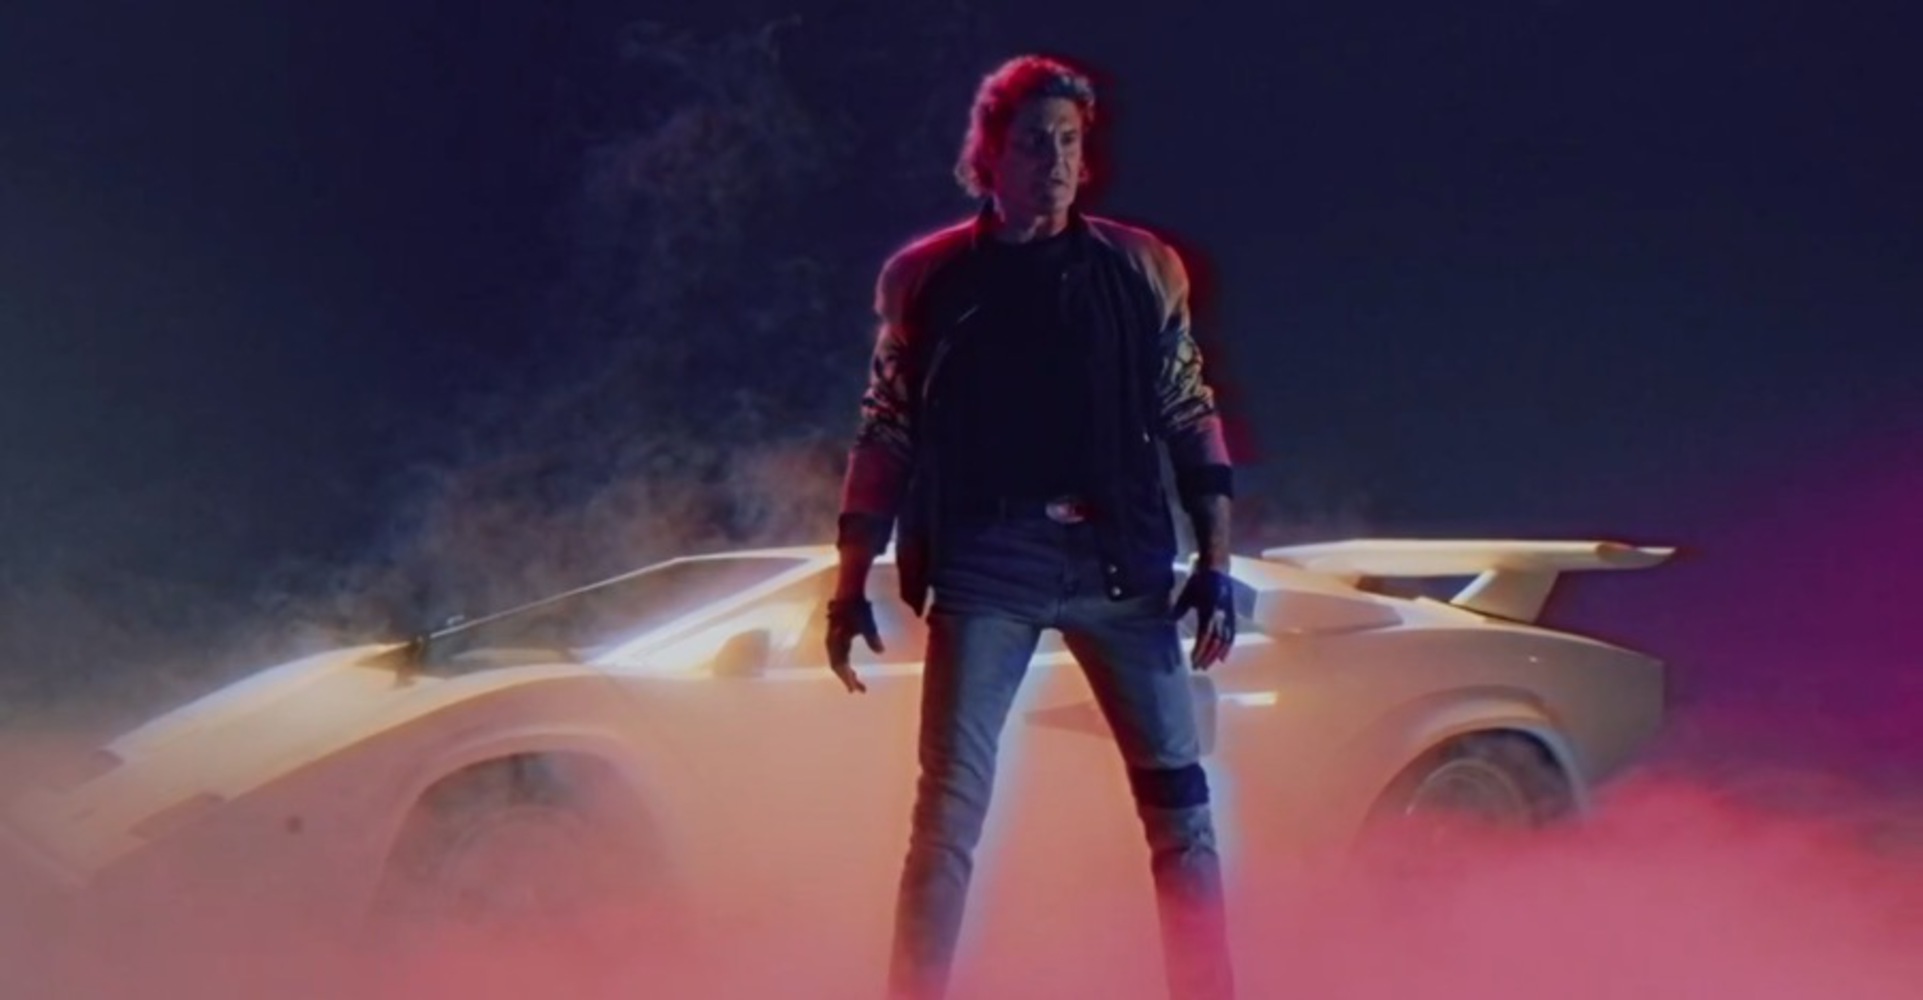 David hasselhoff has lamborghini countach hero car in new 80s music video 94548 1.thumb